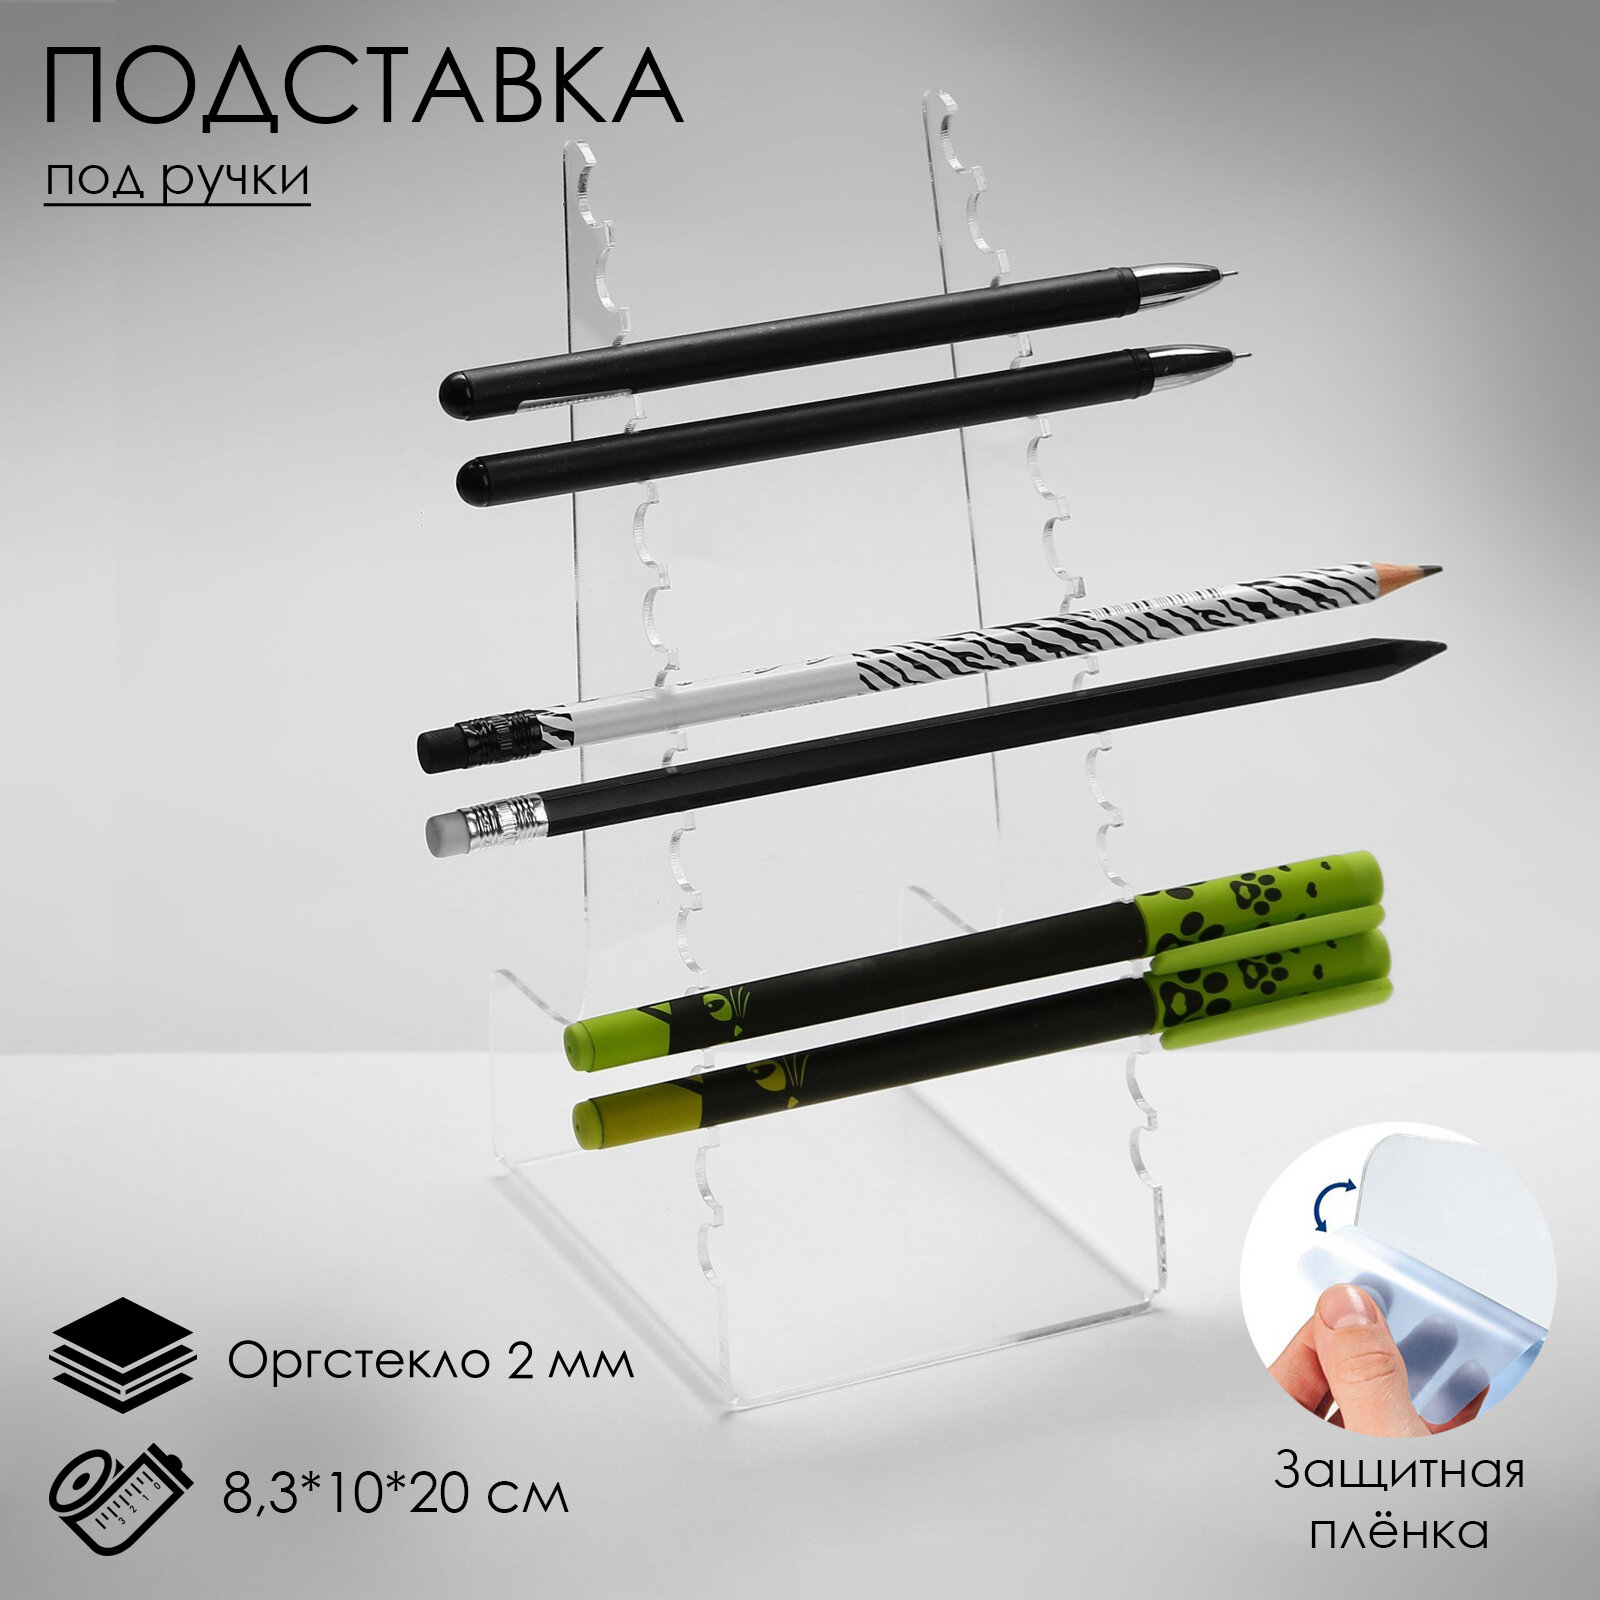 Подставка под ручки и карандаши 8,3x10x20 см, оргстекло 2 мм, В защитной плёнке (1шт.)